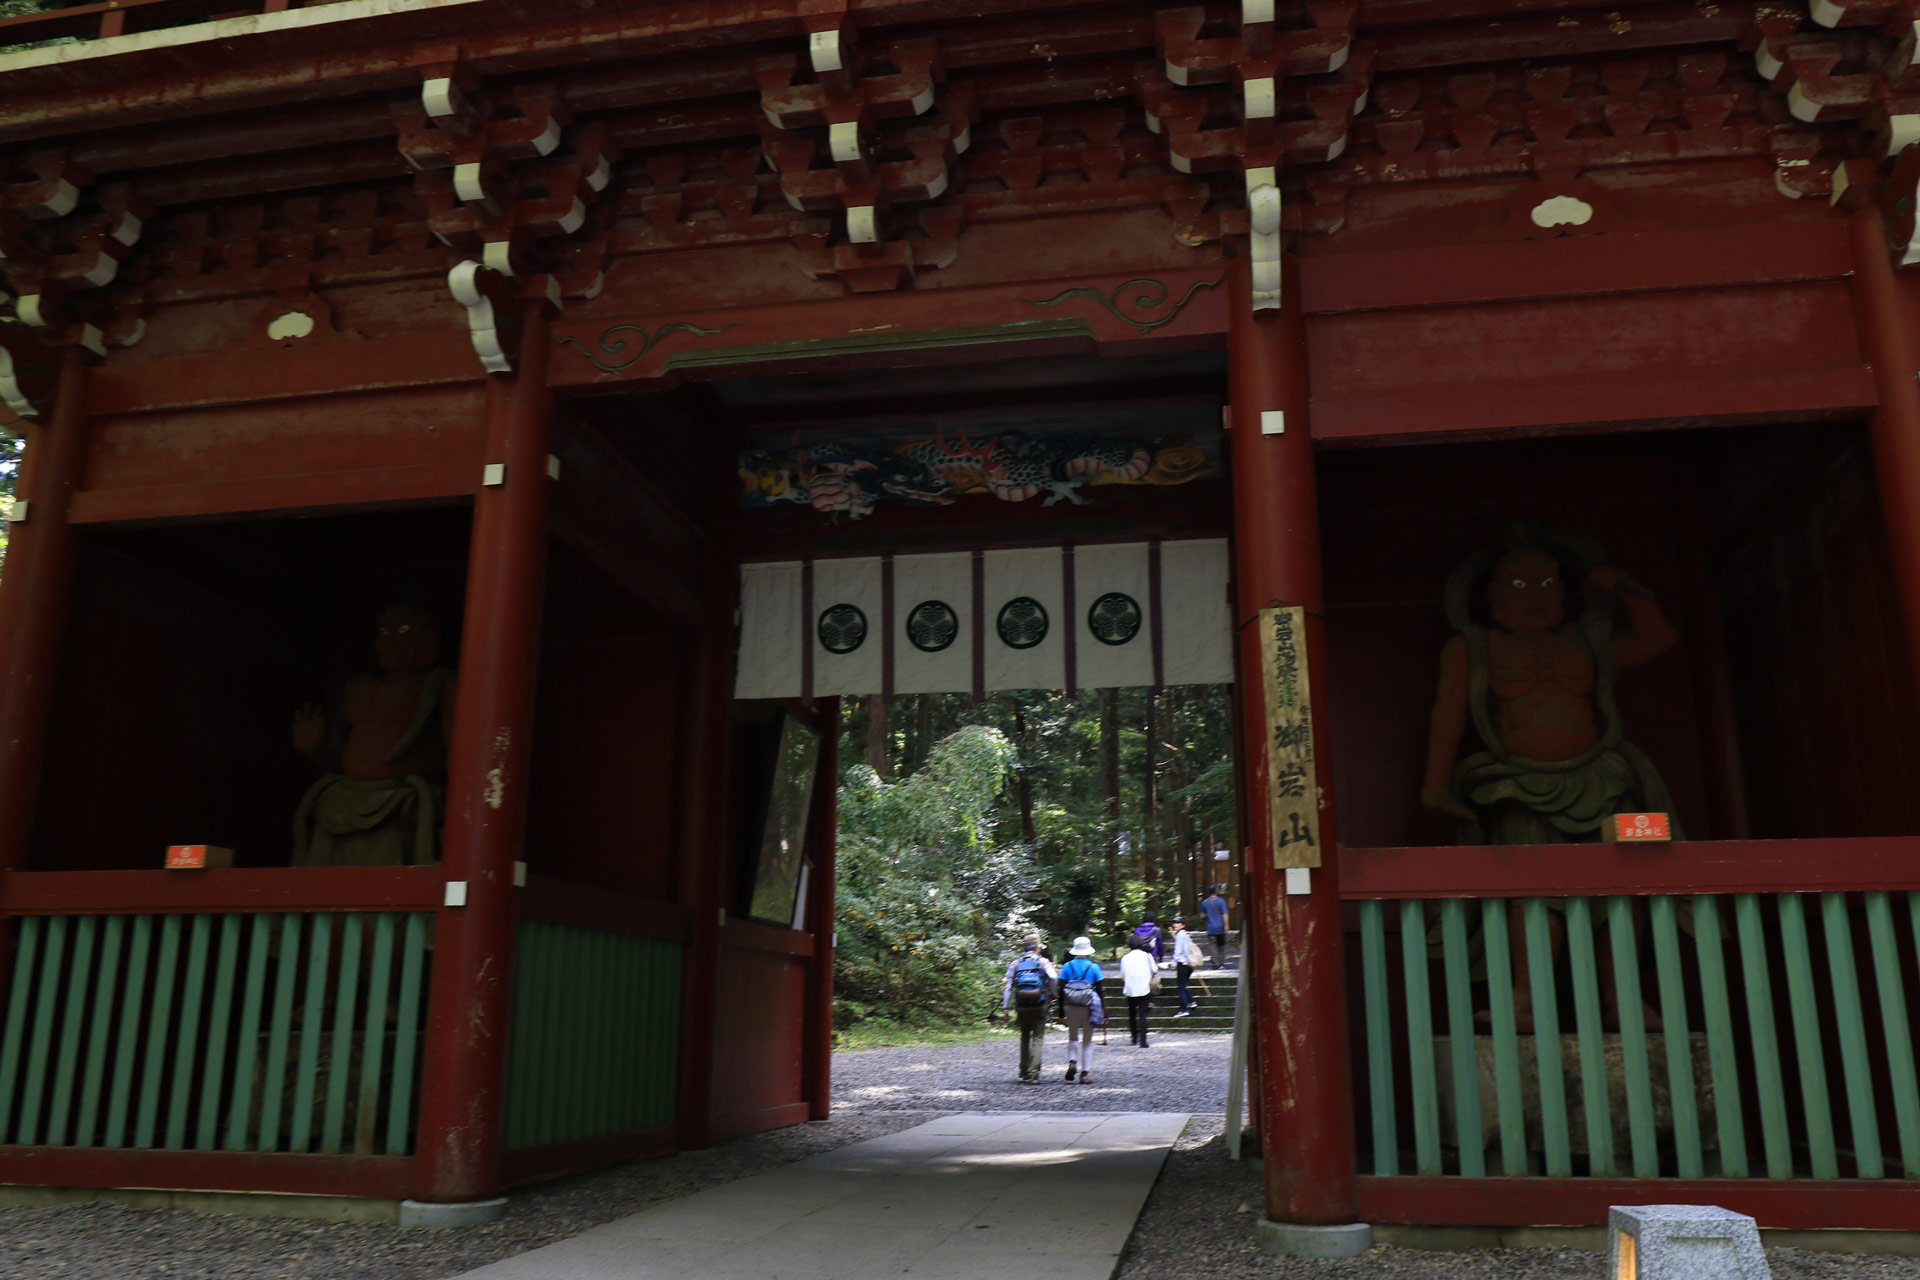 神社ですが、総門には仁王様がいます。神仏習合の名残がまだ残ってますね。